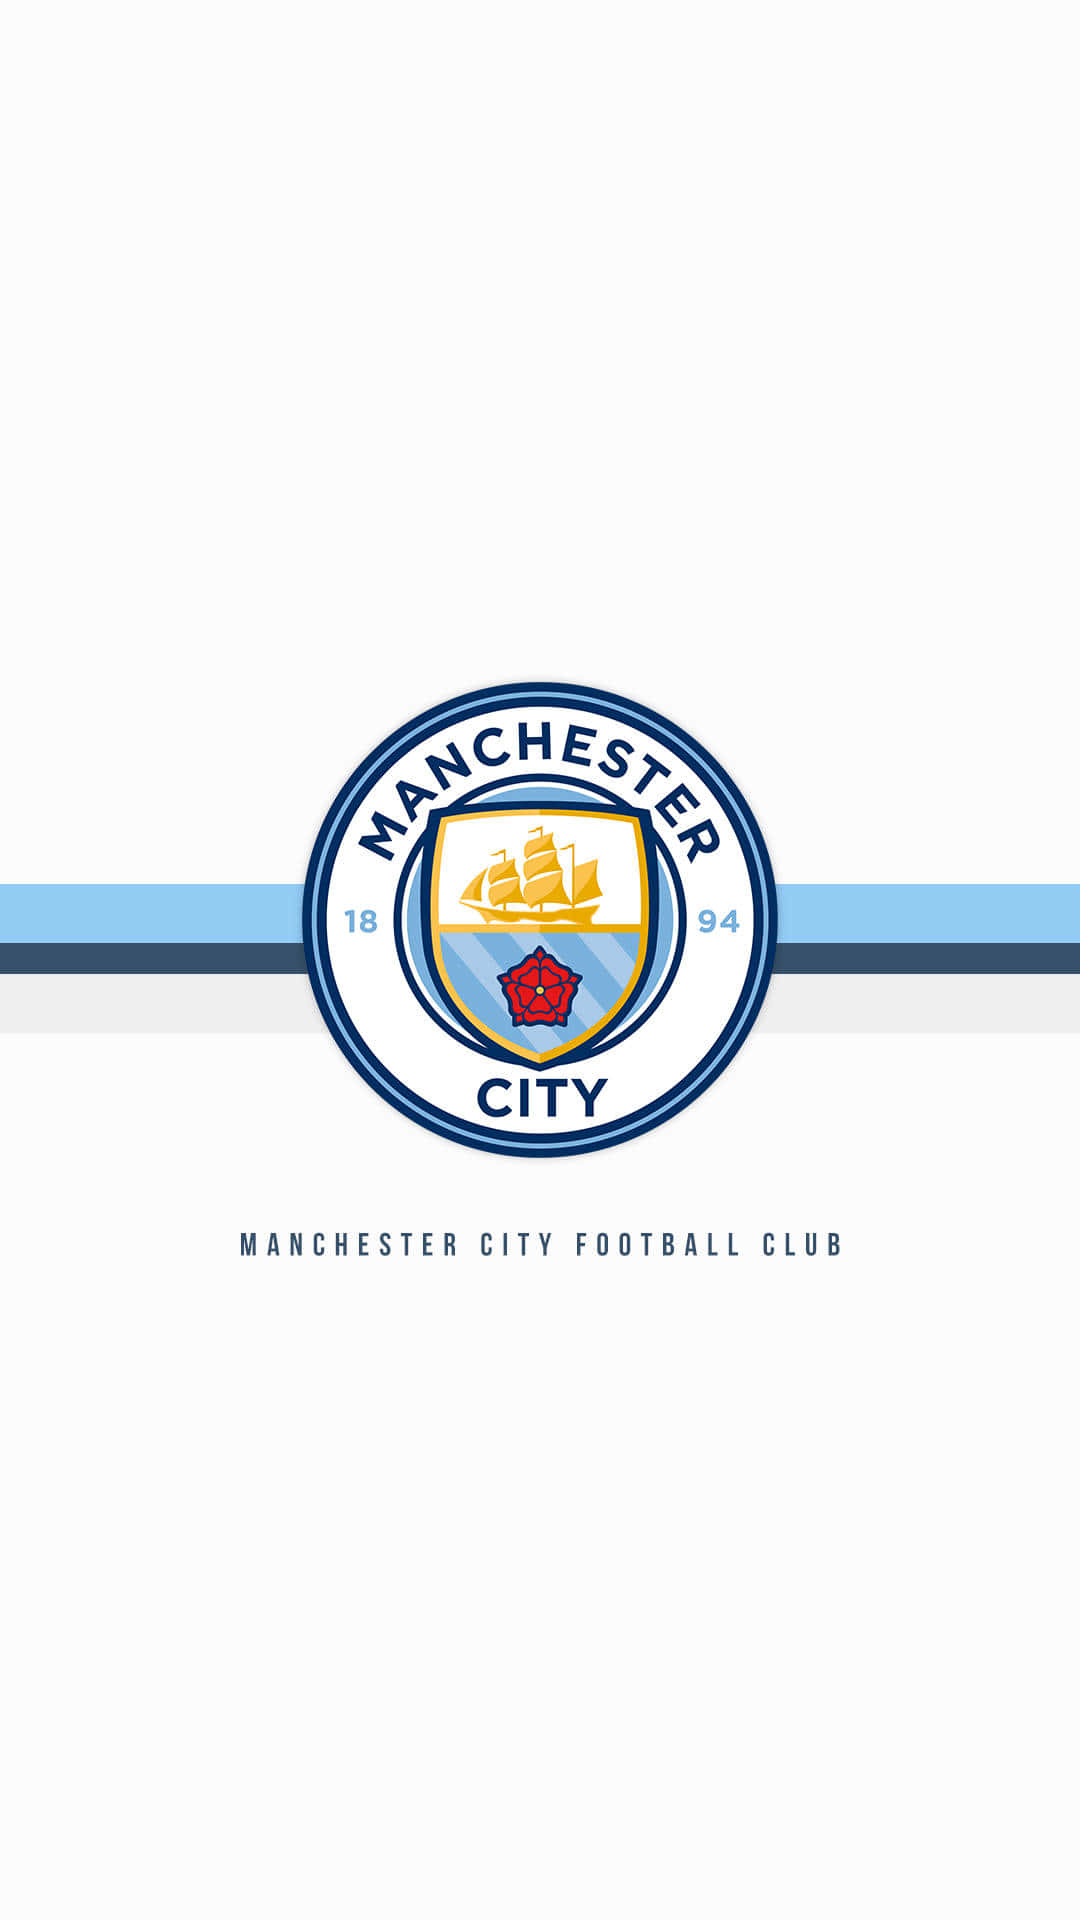 Zeigedeine Treue Für Manchester City Mit Diesem Fantastischen Iphone Wallpaper